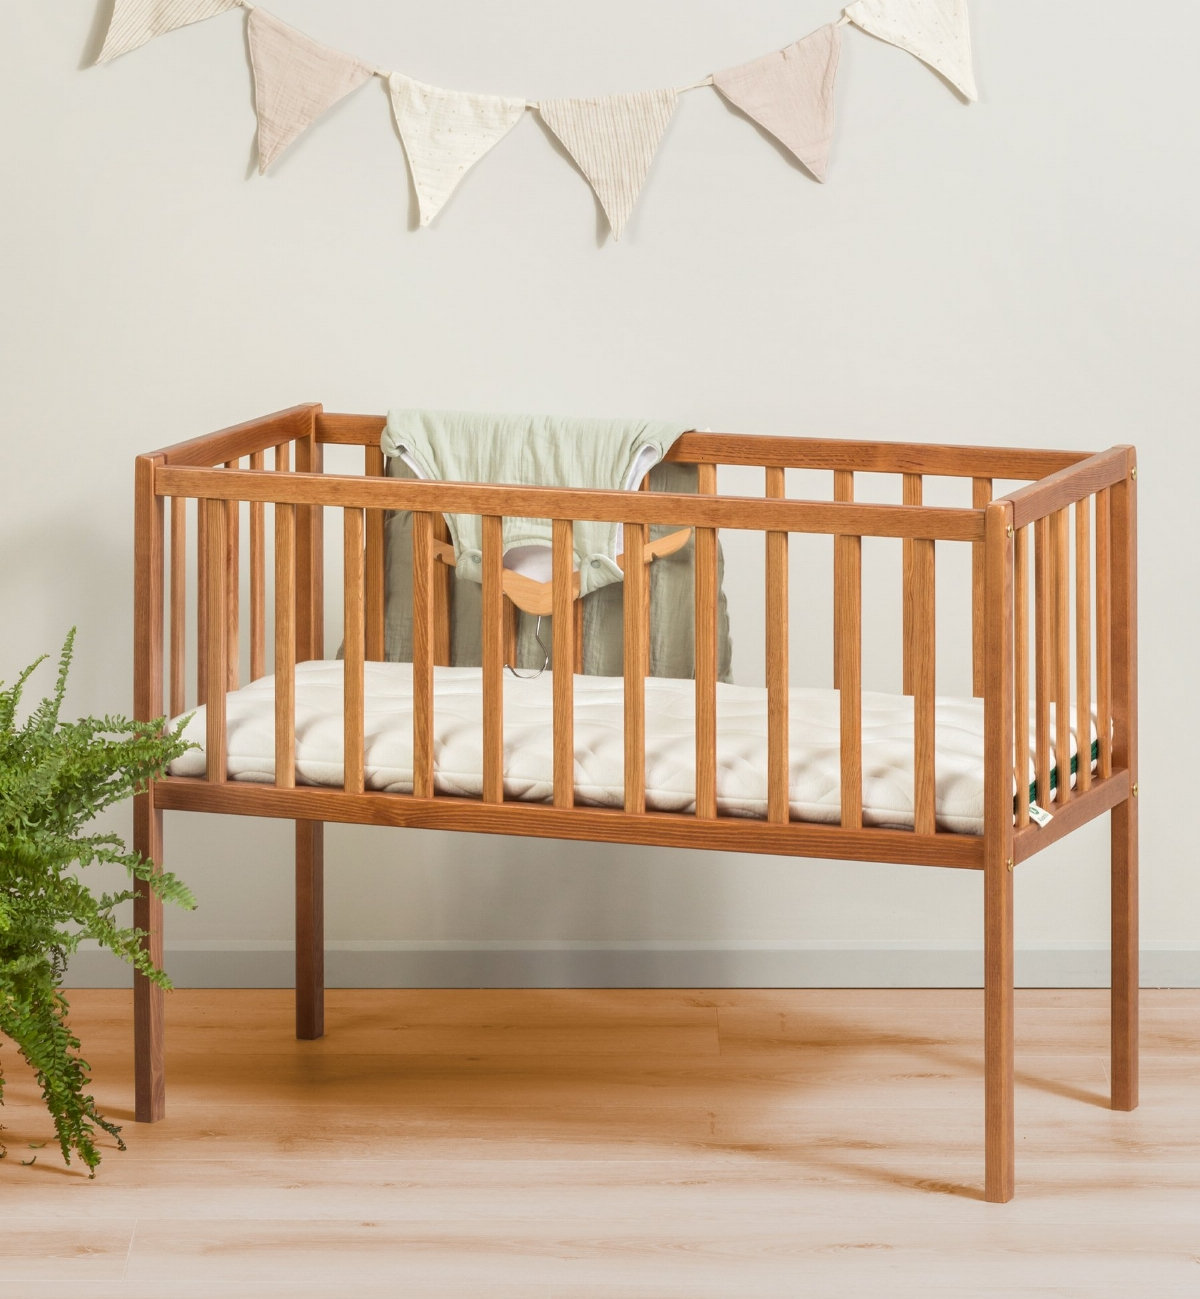 Aloenatura® wieg-/landschapsmatrashoes: comfort en zachtheid voor uw baby